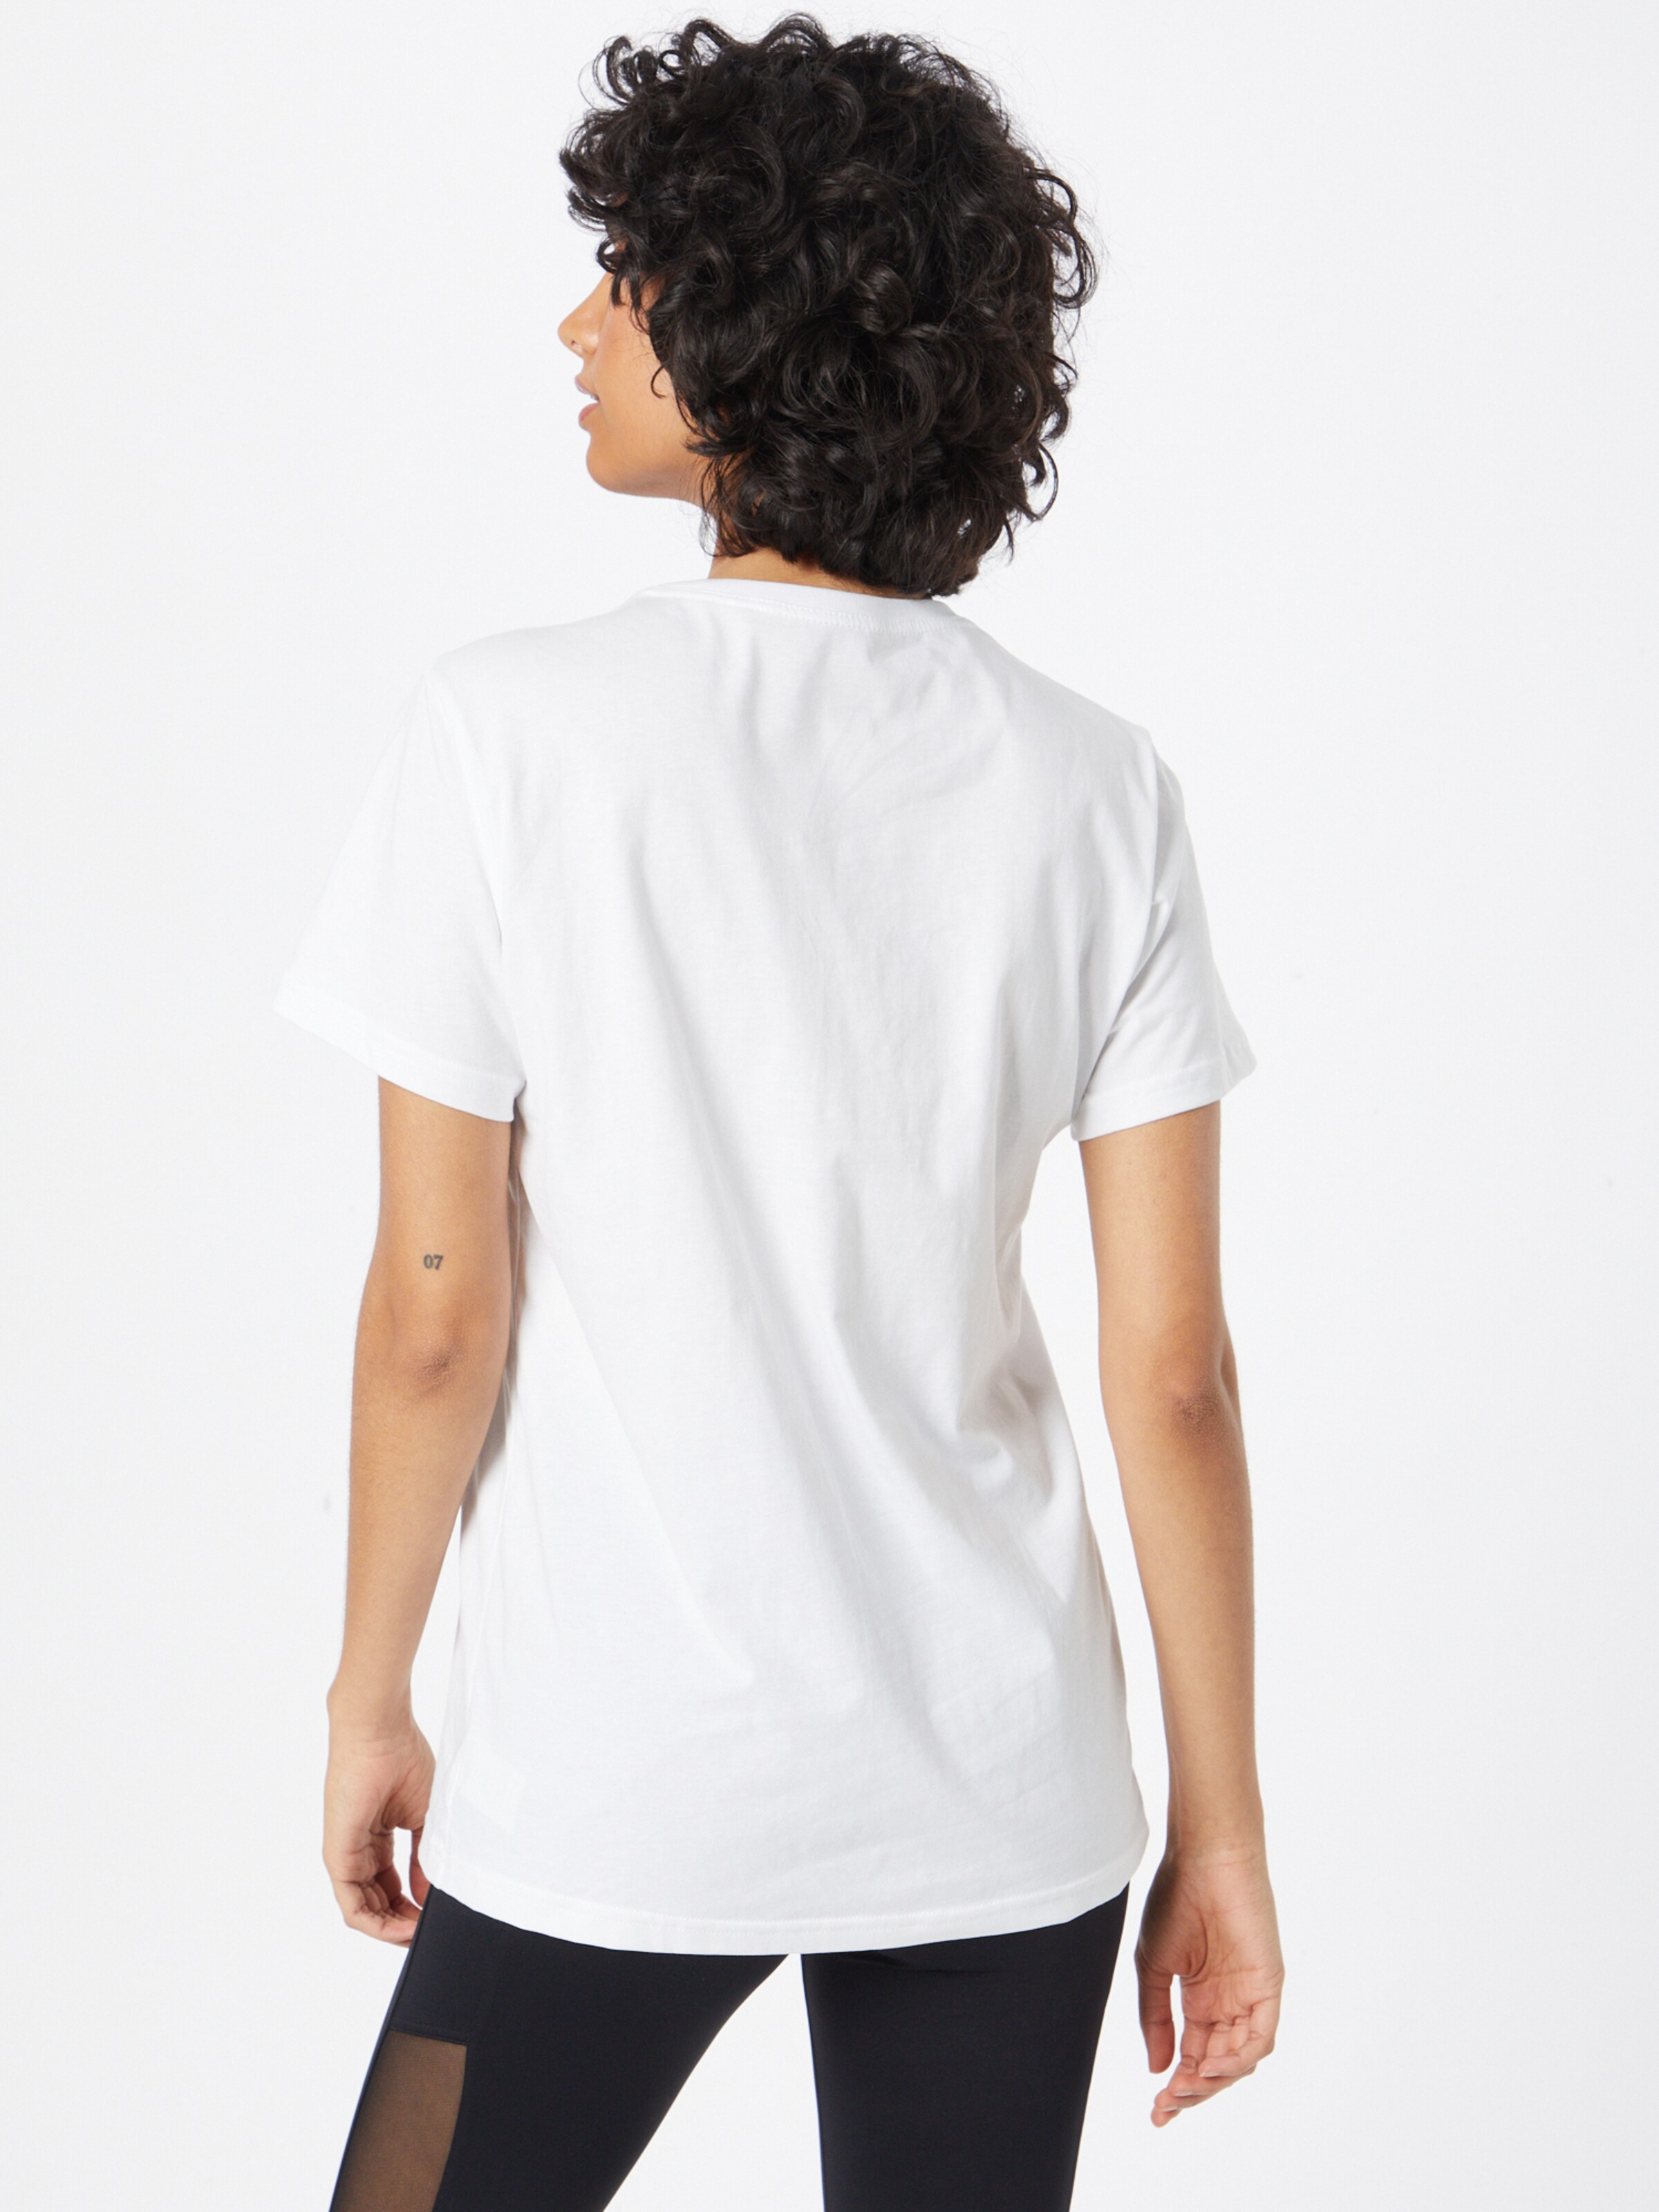 Frauen Sportarten NEBBIA Shirt in Weiß - VR18590